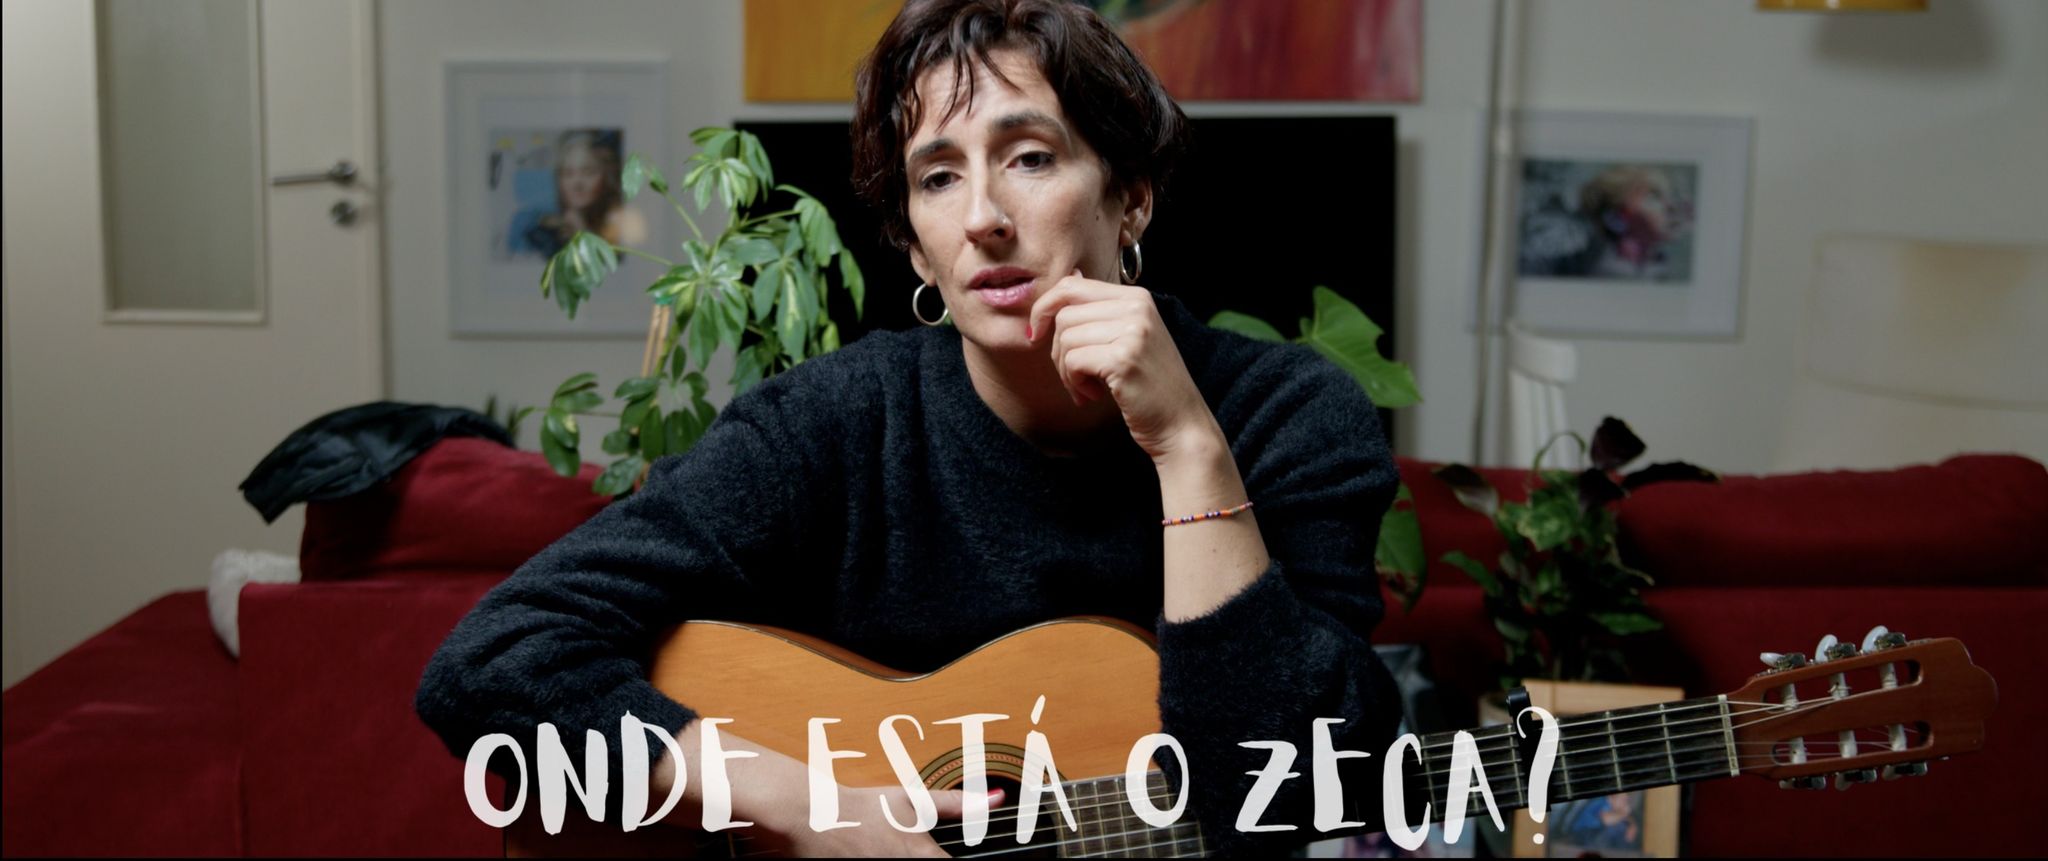 Entrevista. Tiago Pereira pergunta sobre liberdades no filme “Onde está o Zeca?”, que terá estreia no Festival Política